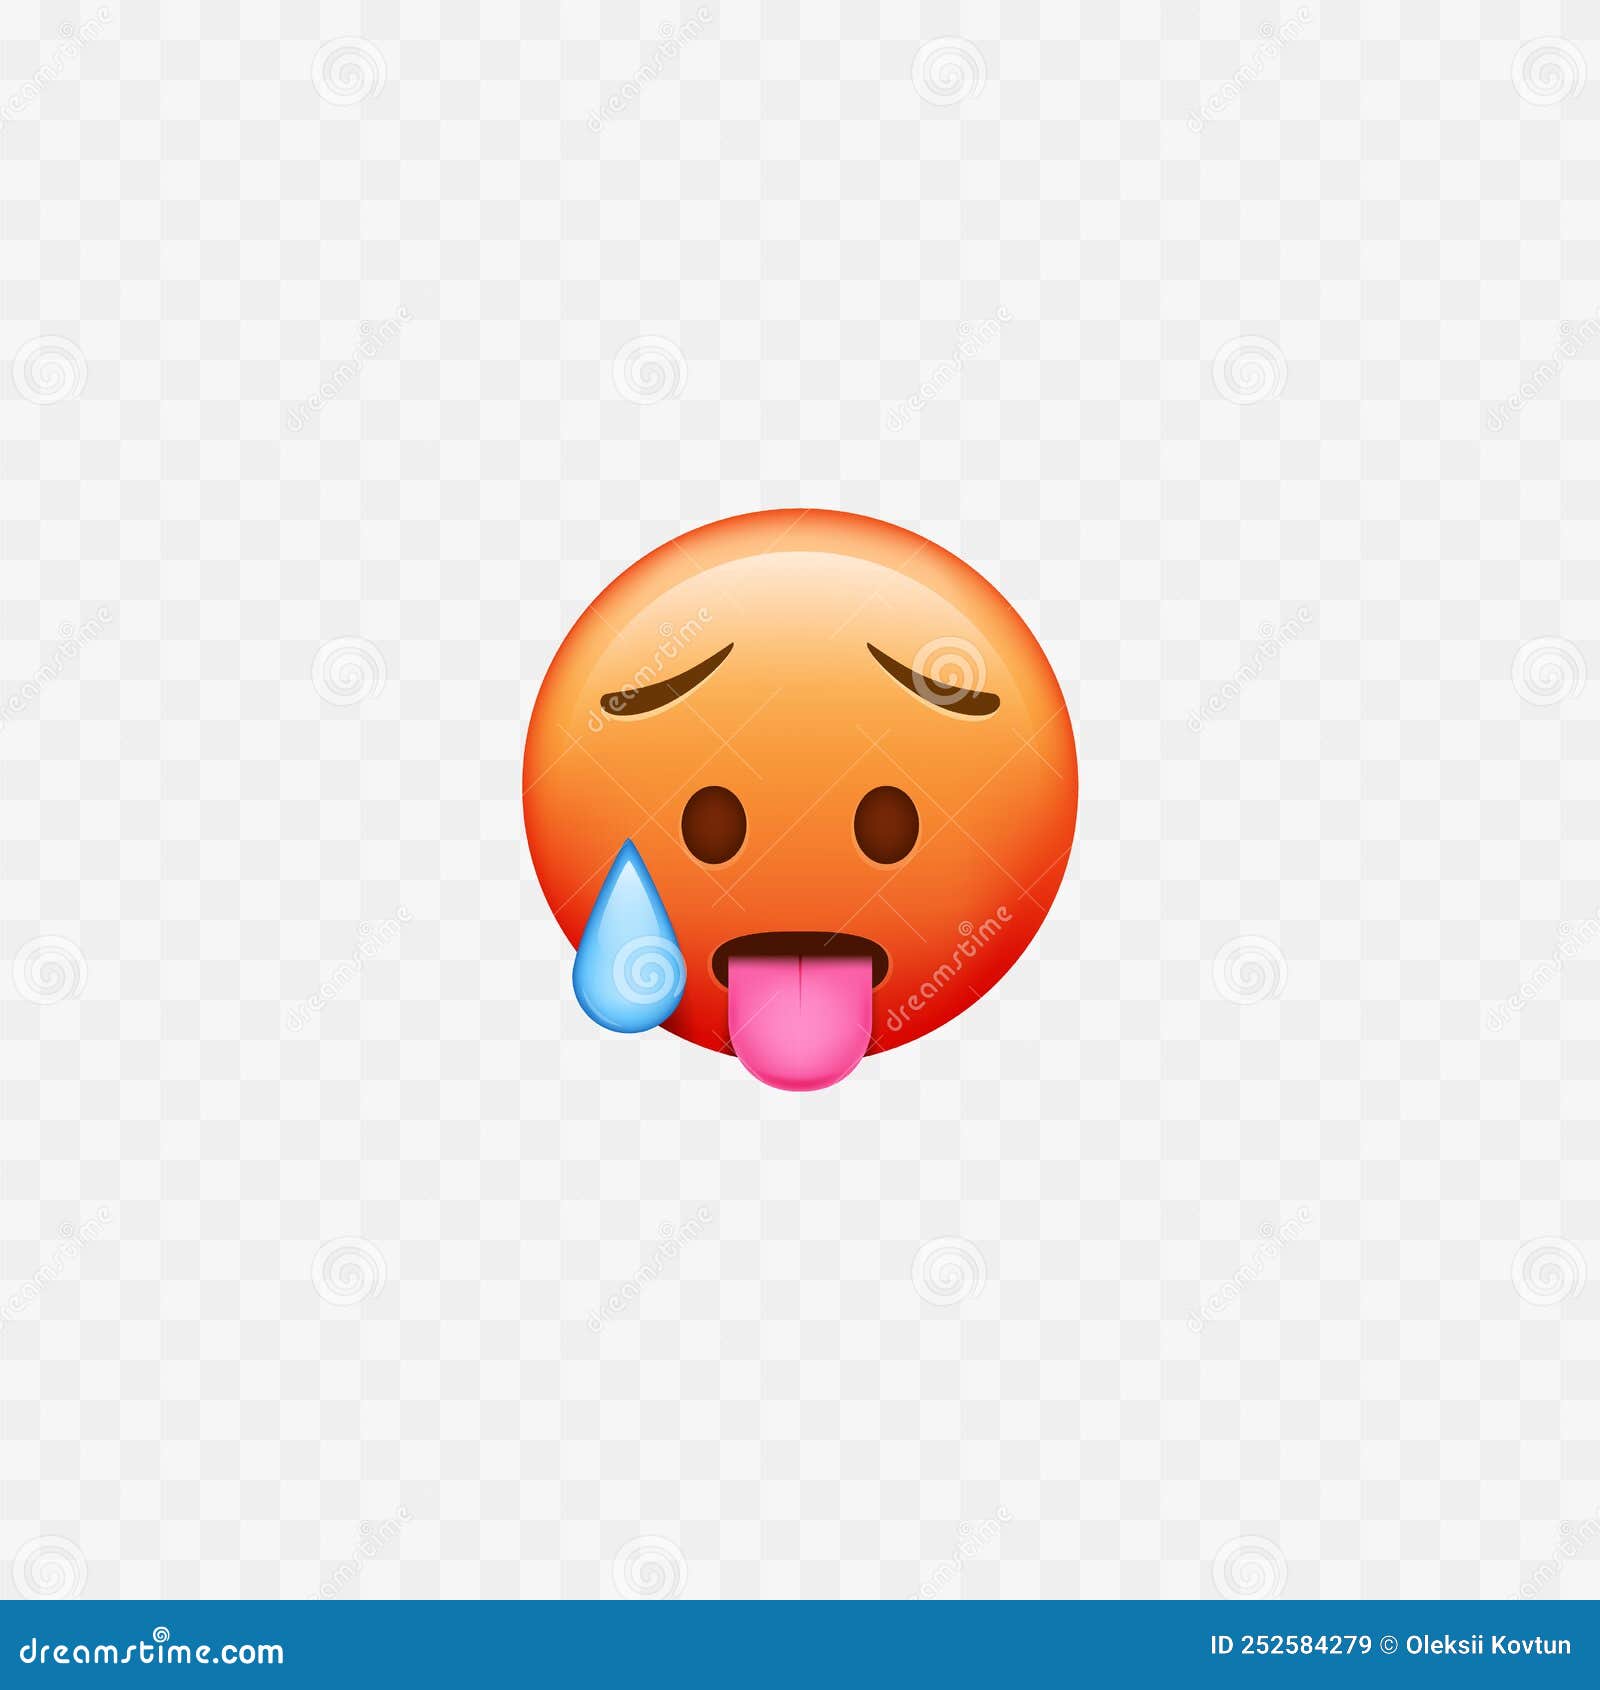 Sweating Emoji Backgrounds Emoji Wallpaper Emoji Images | The Best Porn ...